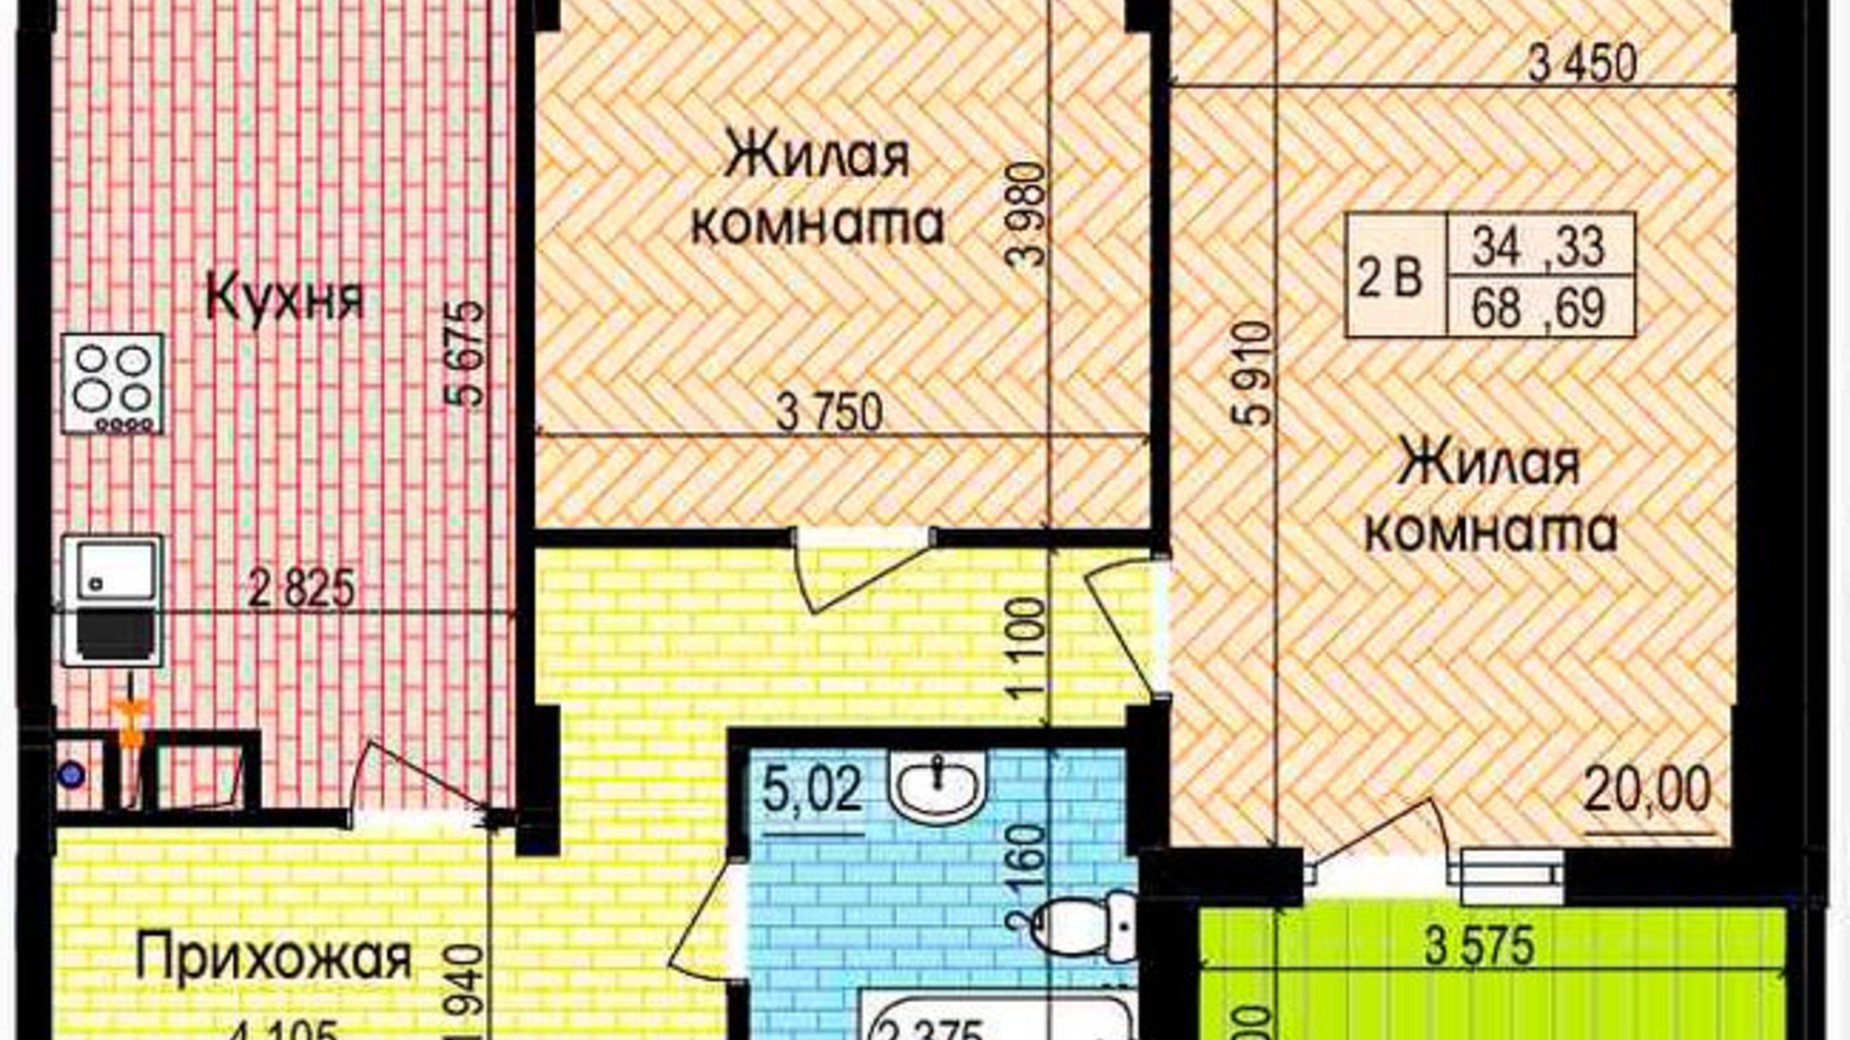 Планировка 2-комнатной квартиры в ЖК Пролисок 68.69 м², фото 341131